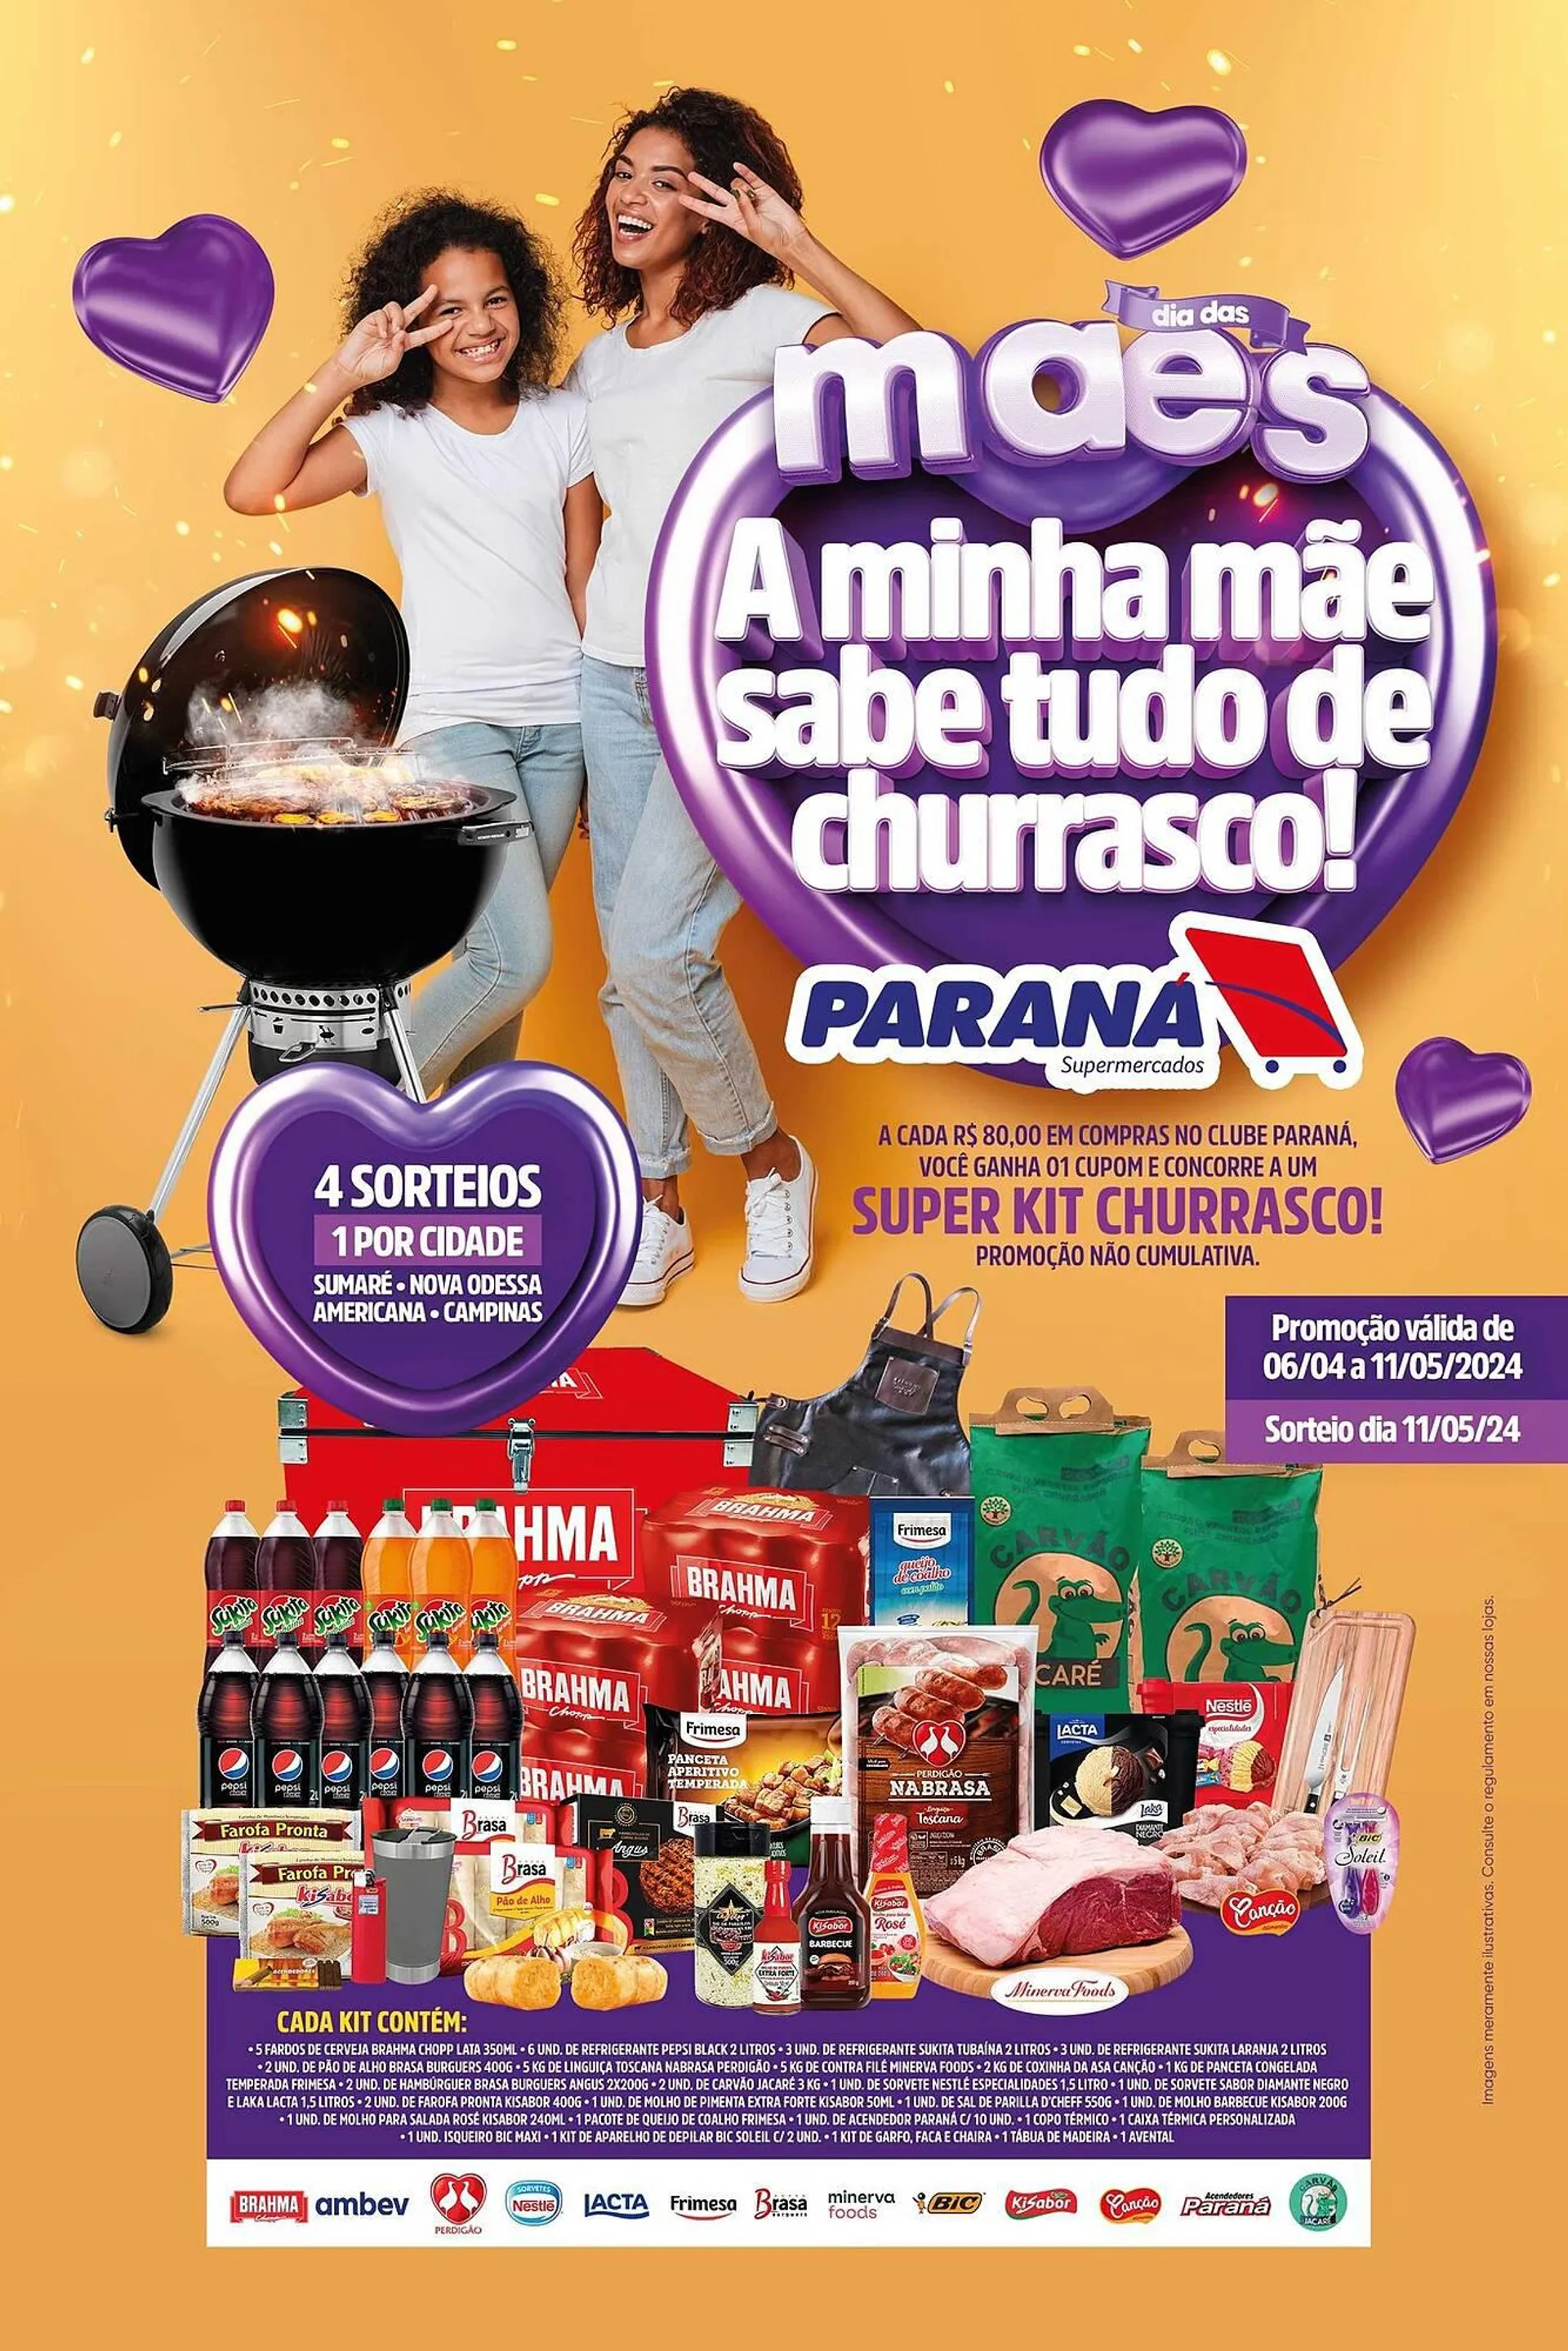 Encarte de Catálogo Supermercado Paraná 6 de abril até 11 de maio 2024 - Pagina 1